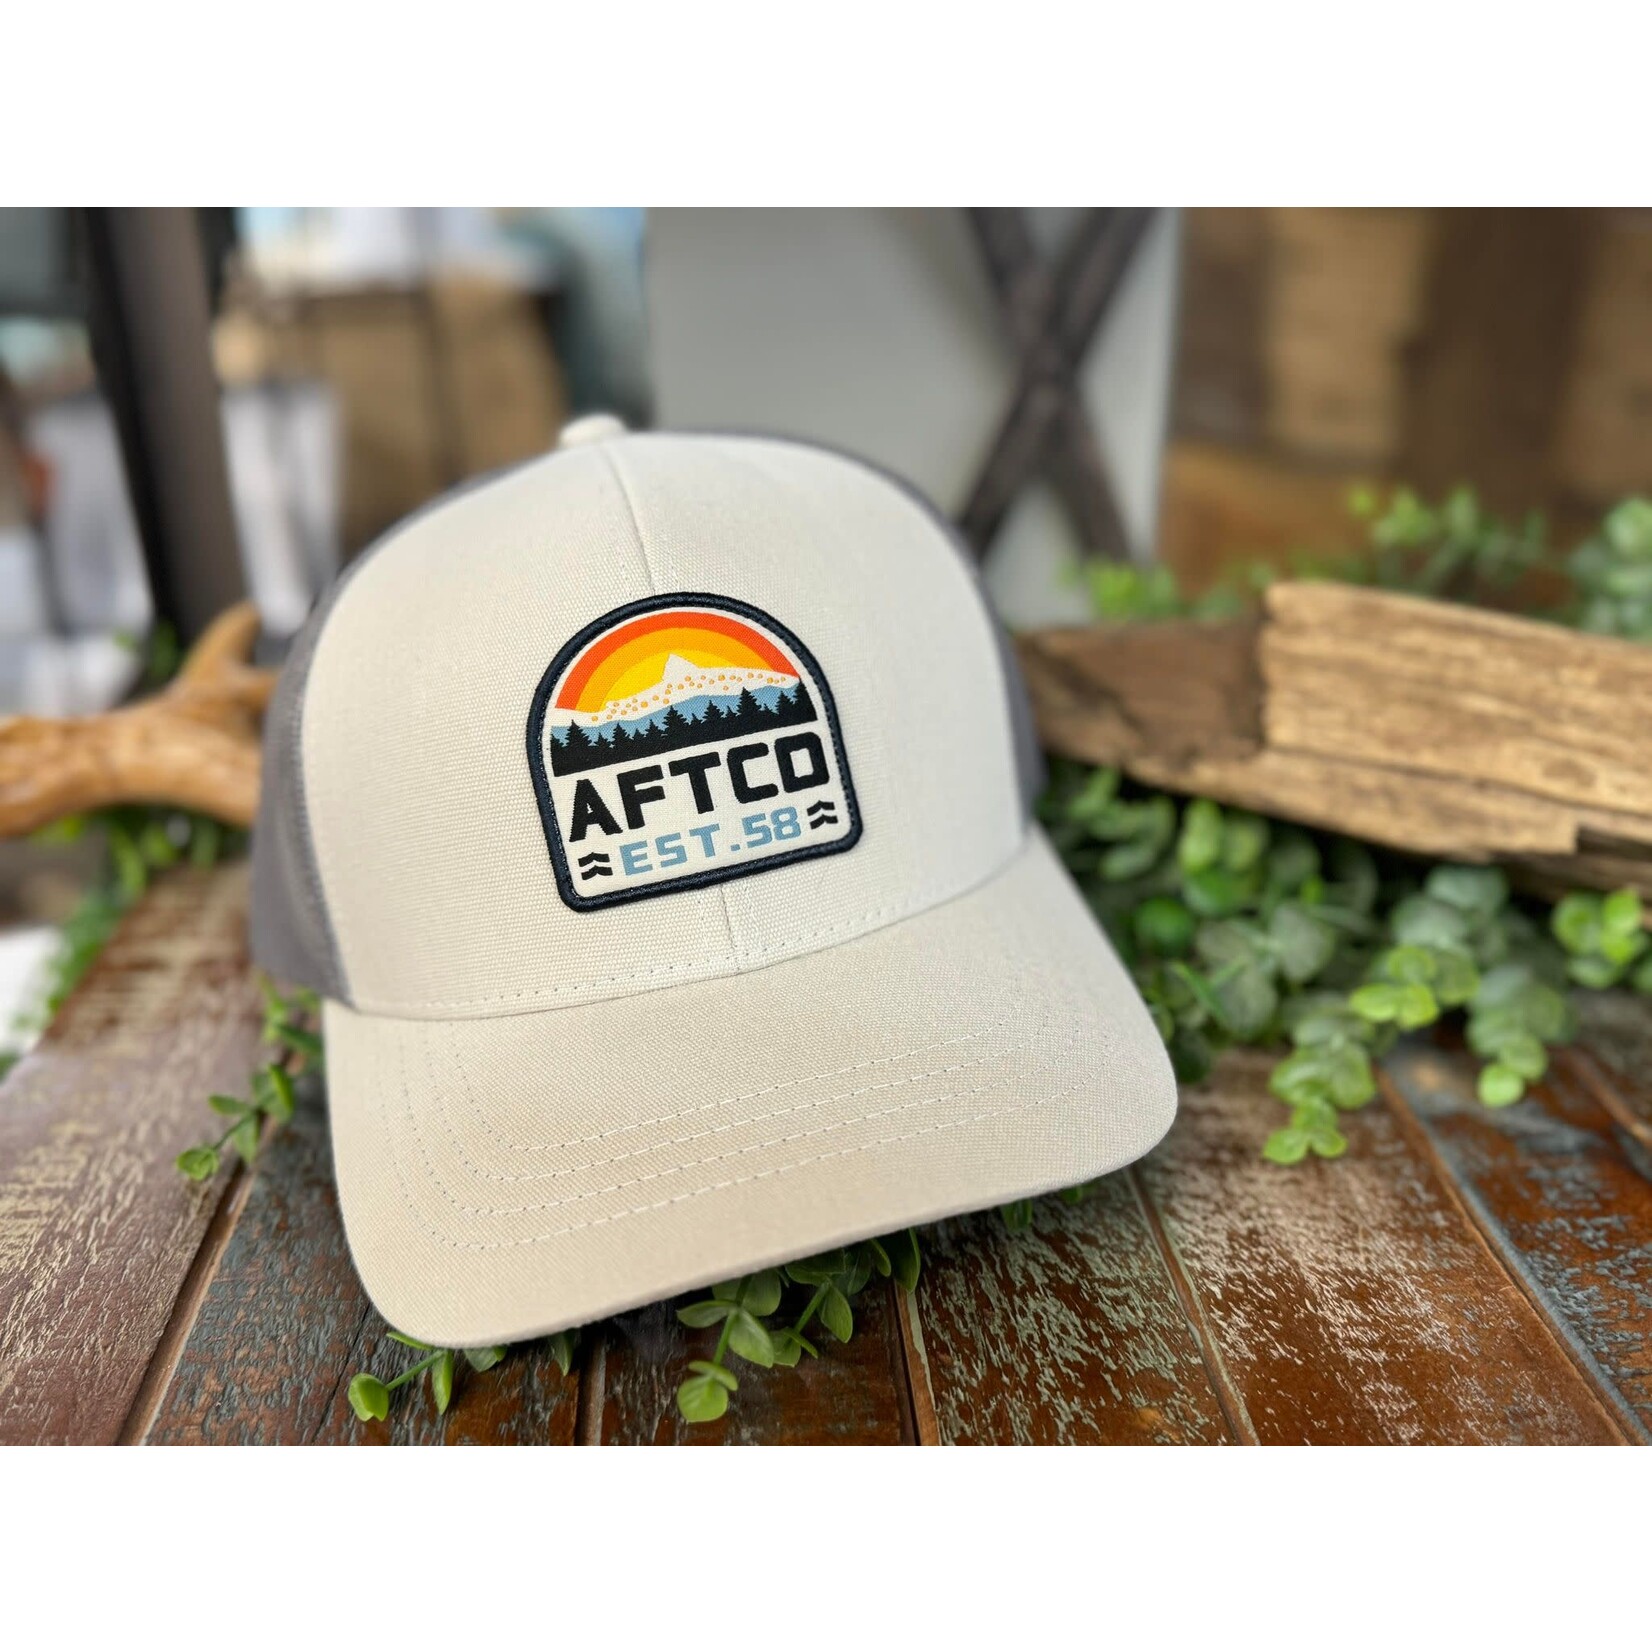 Aftco Aftco Men's Rustic Trucker Snapback Hat